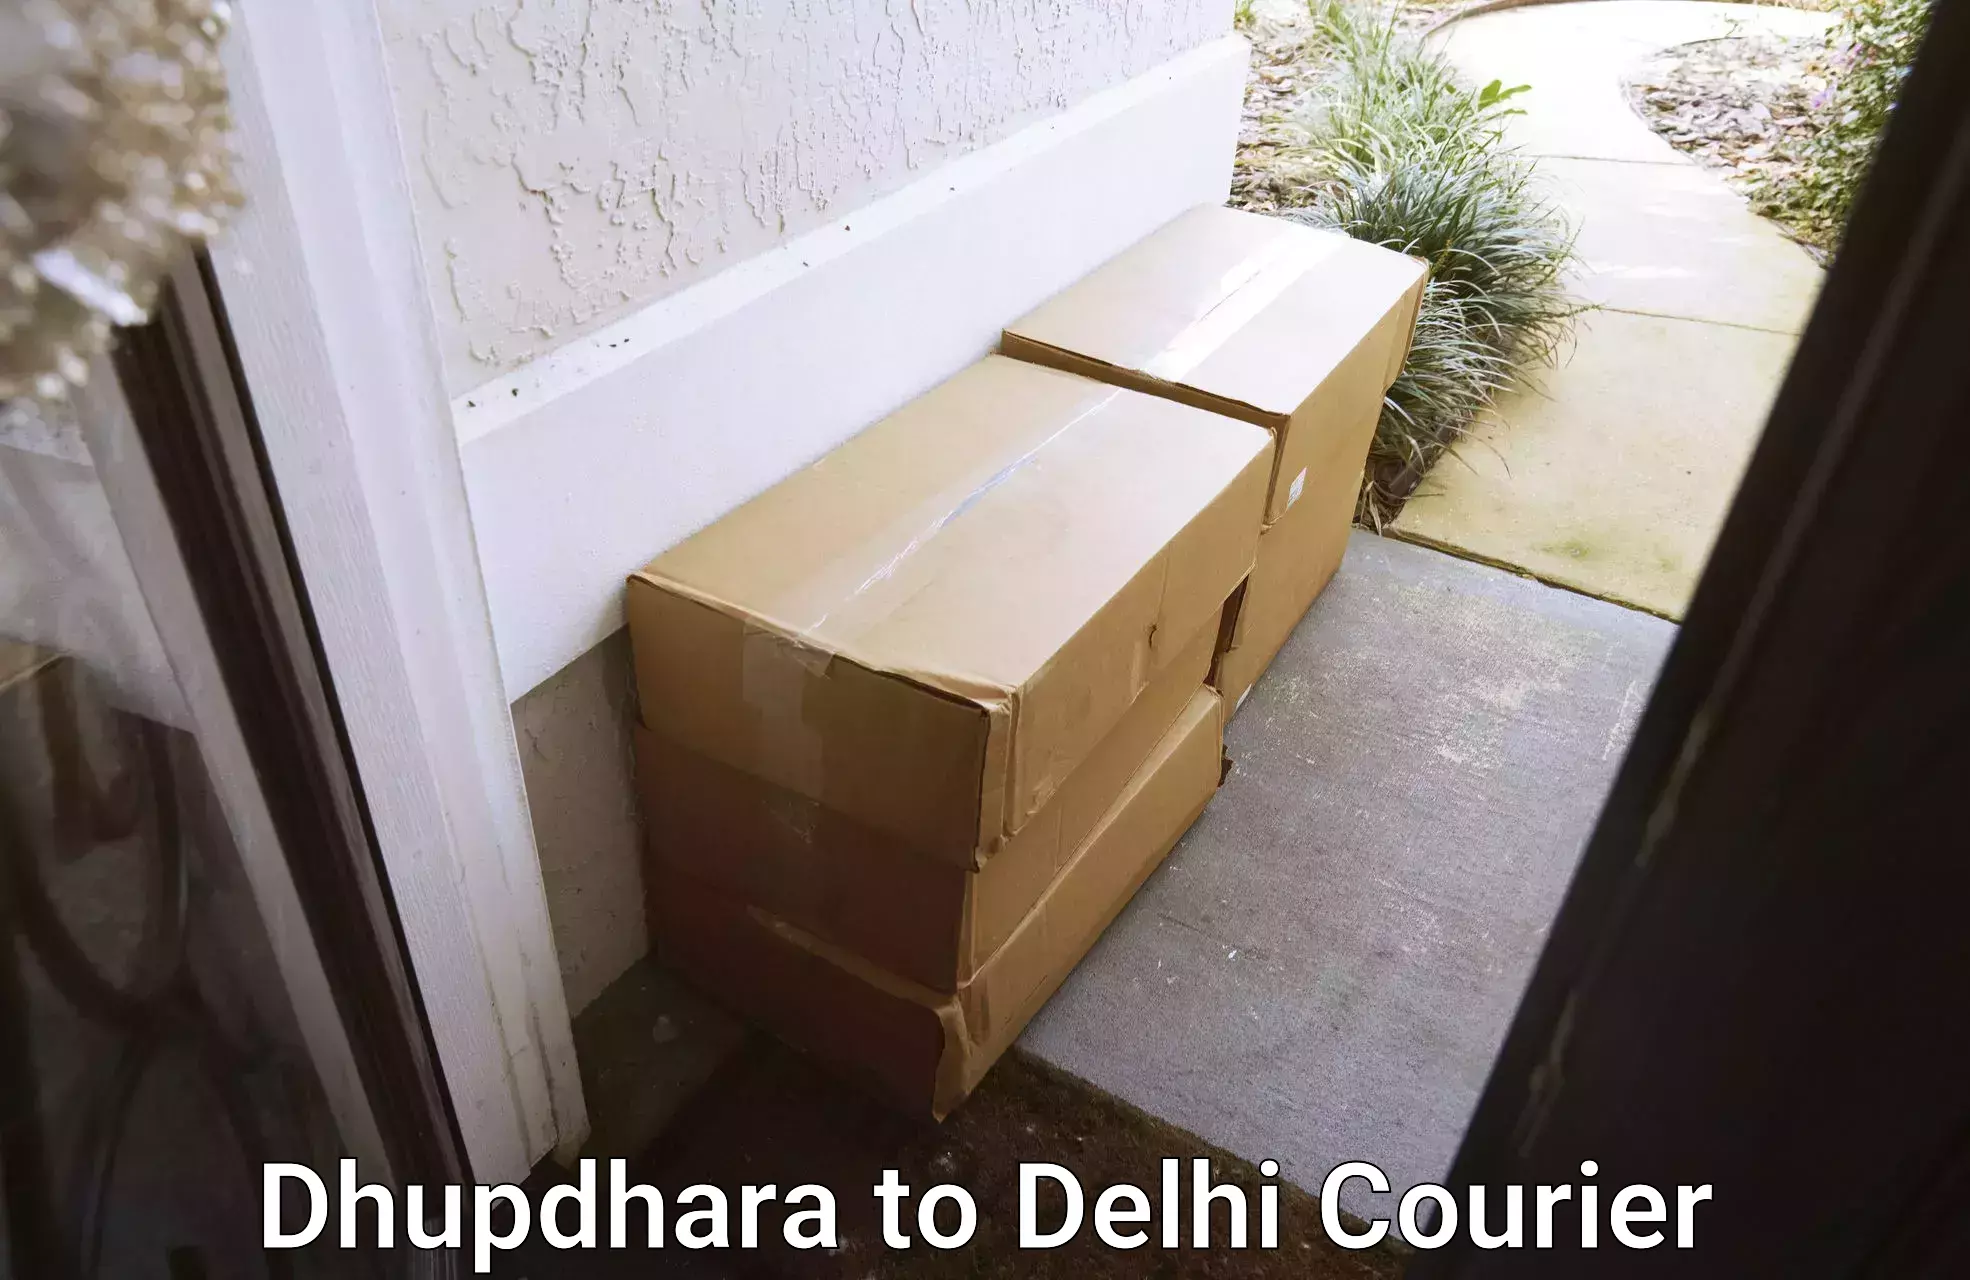 Fragile item shipping Dhupdhara to NCR